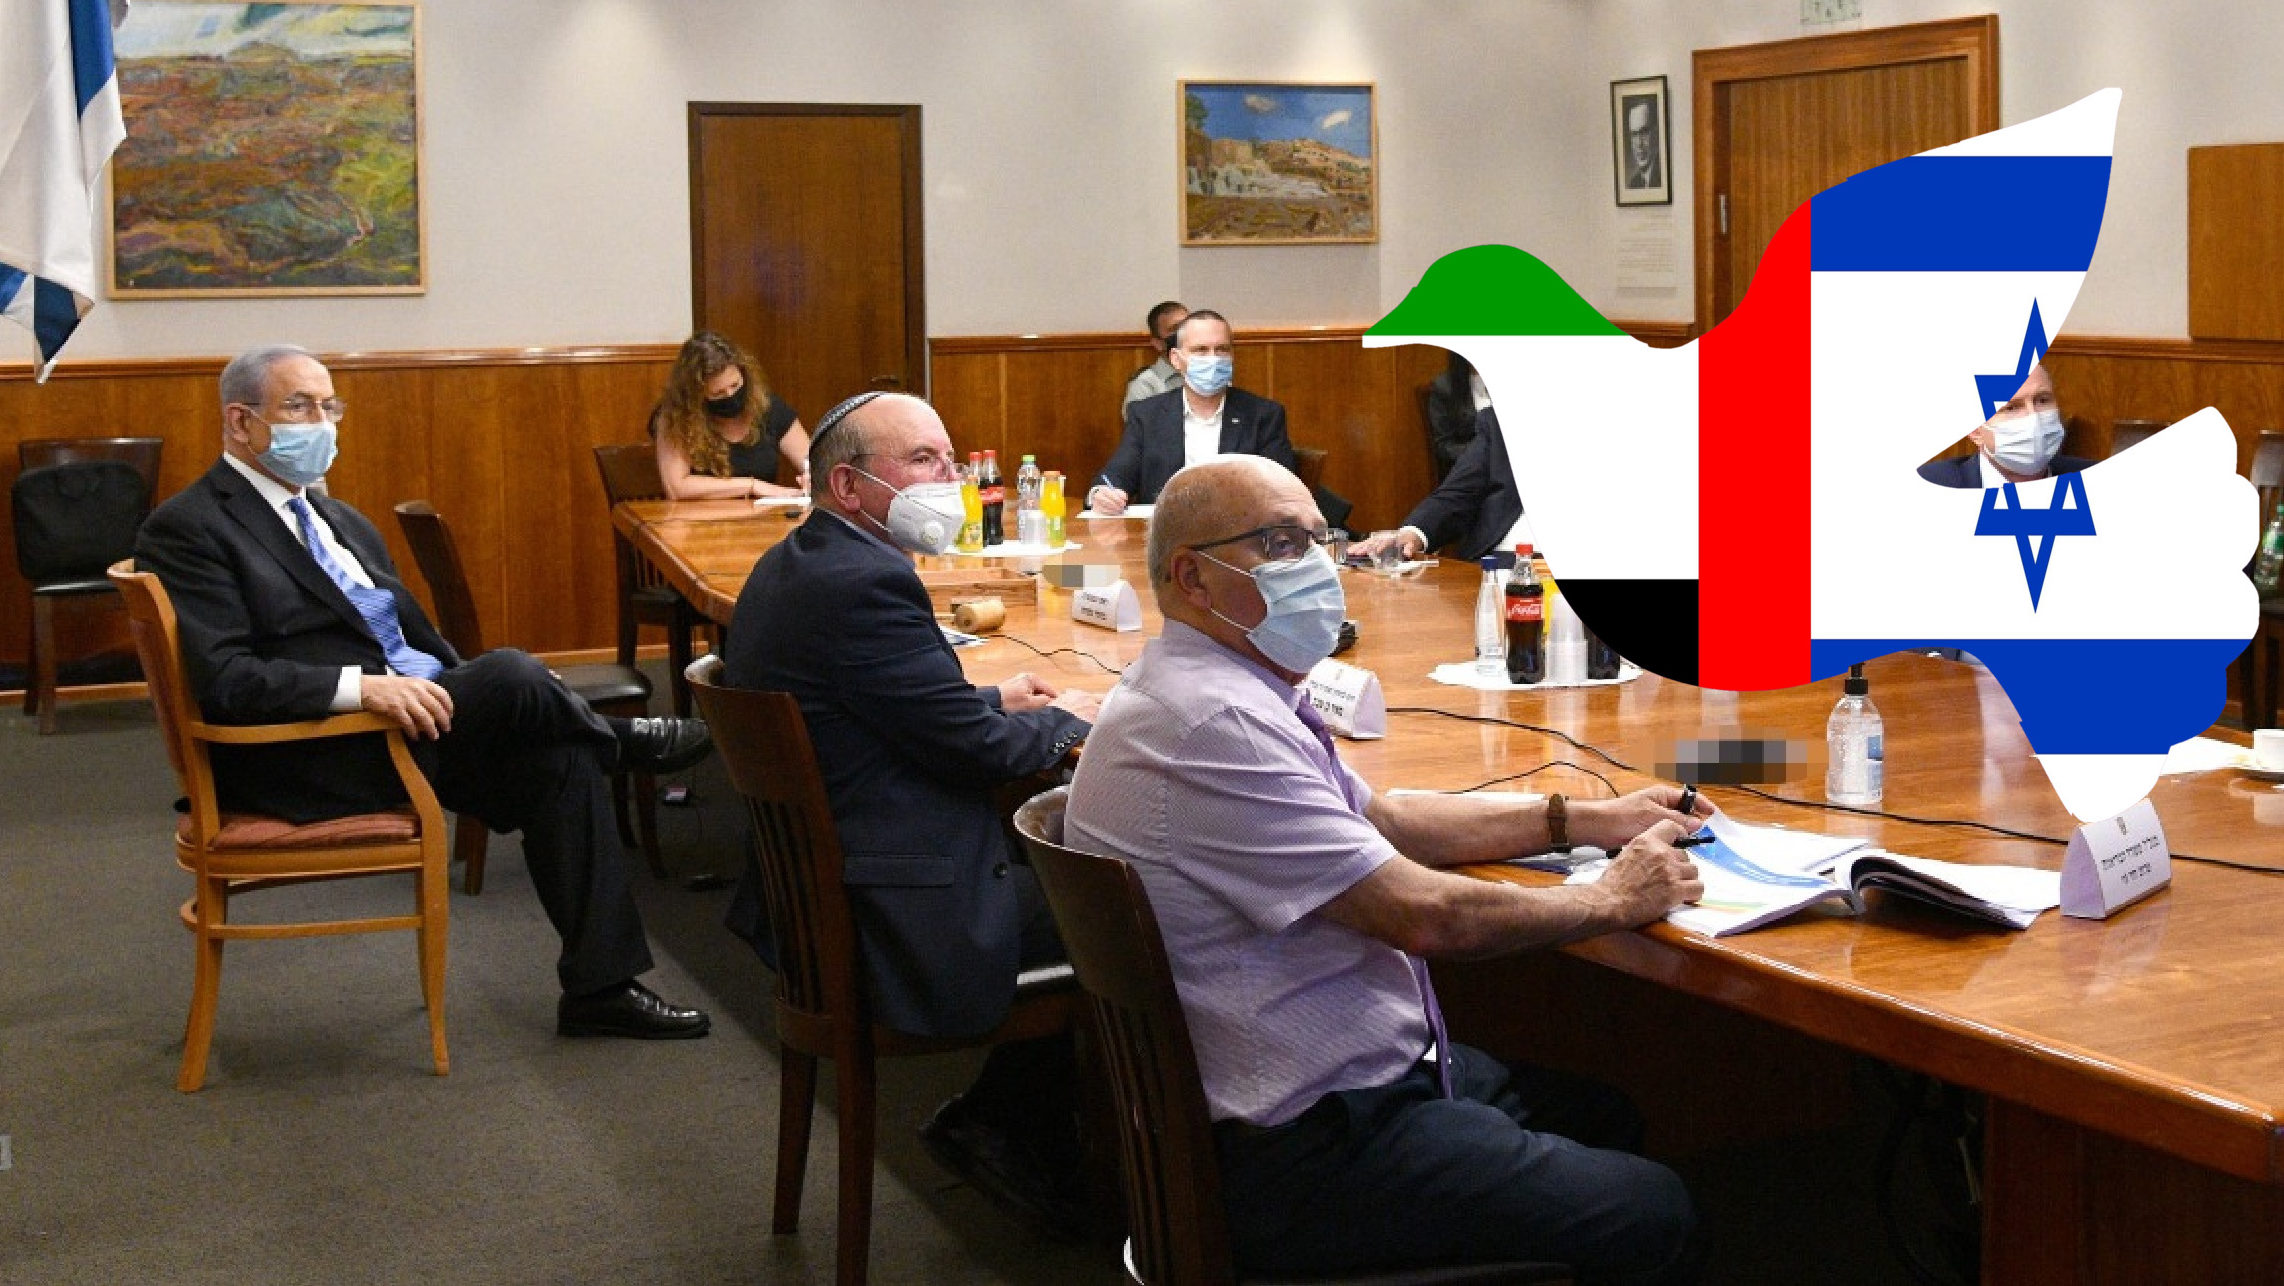 Cabinet OKs Israel-UAE Peace Treaty